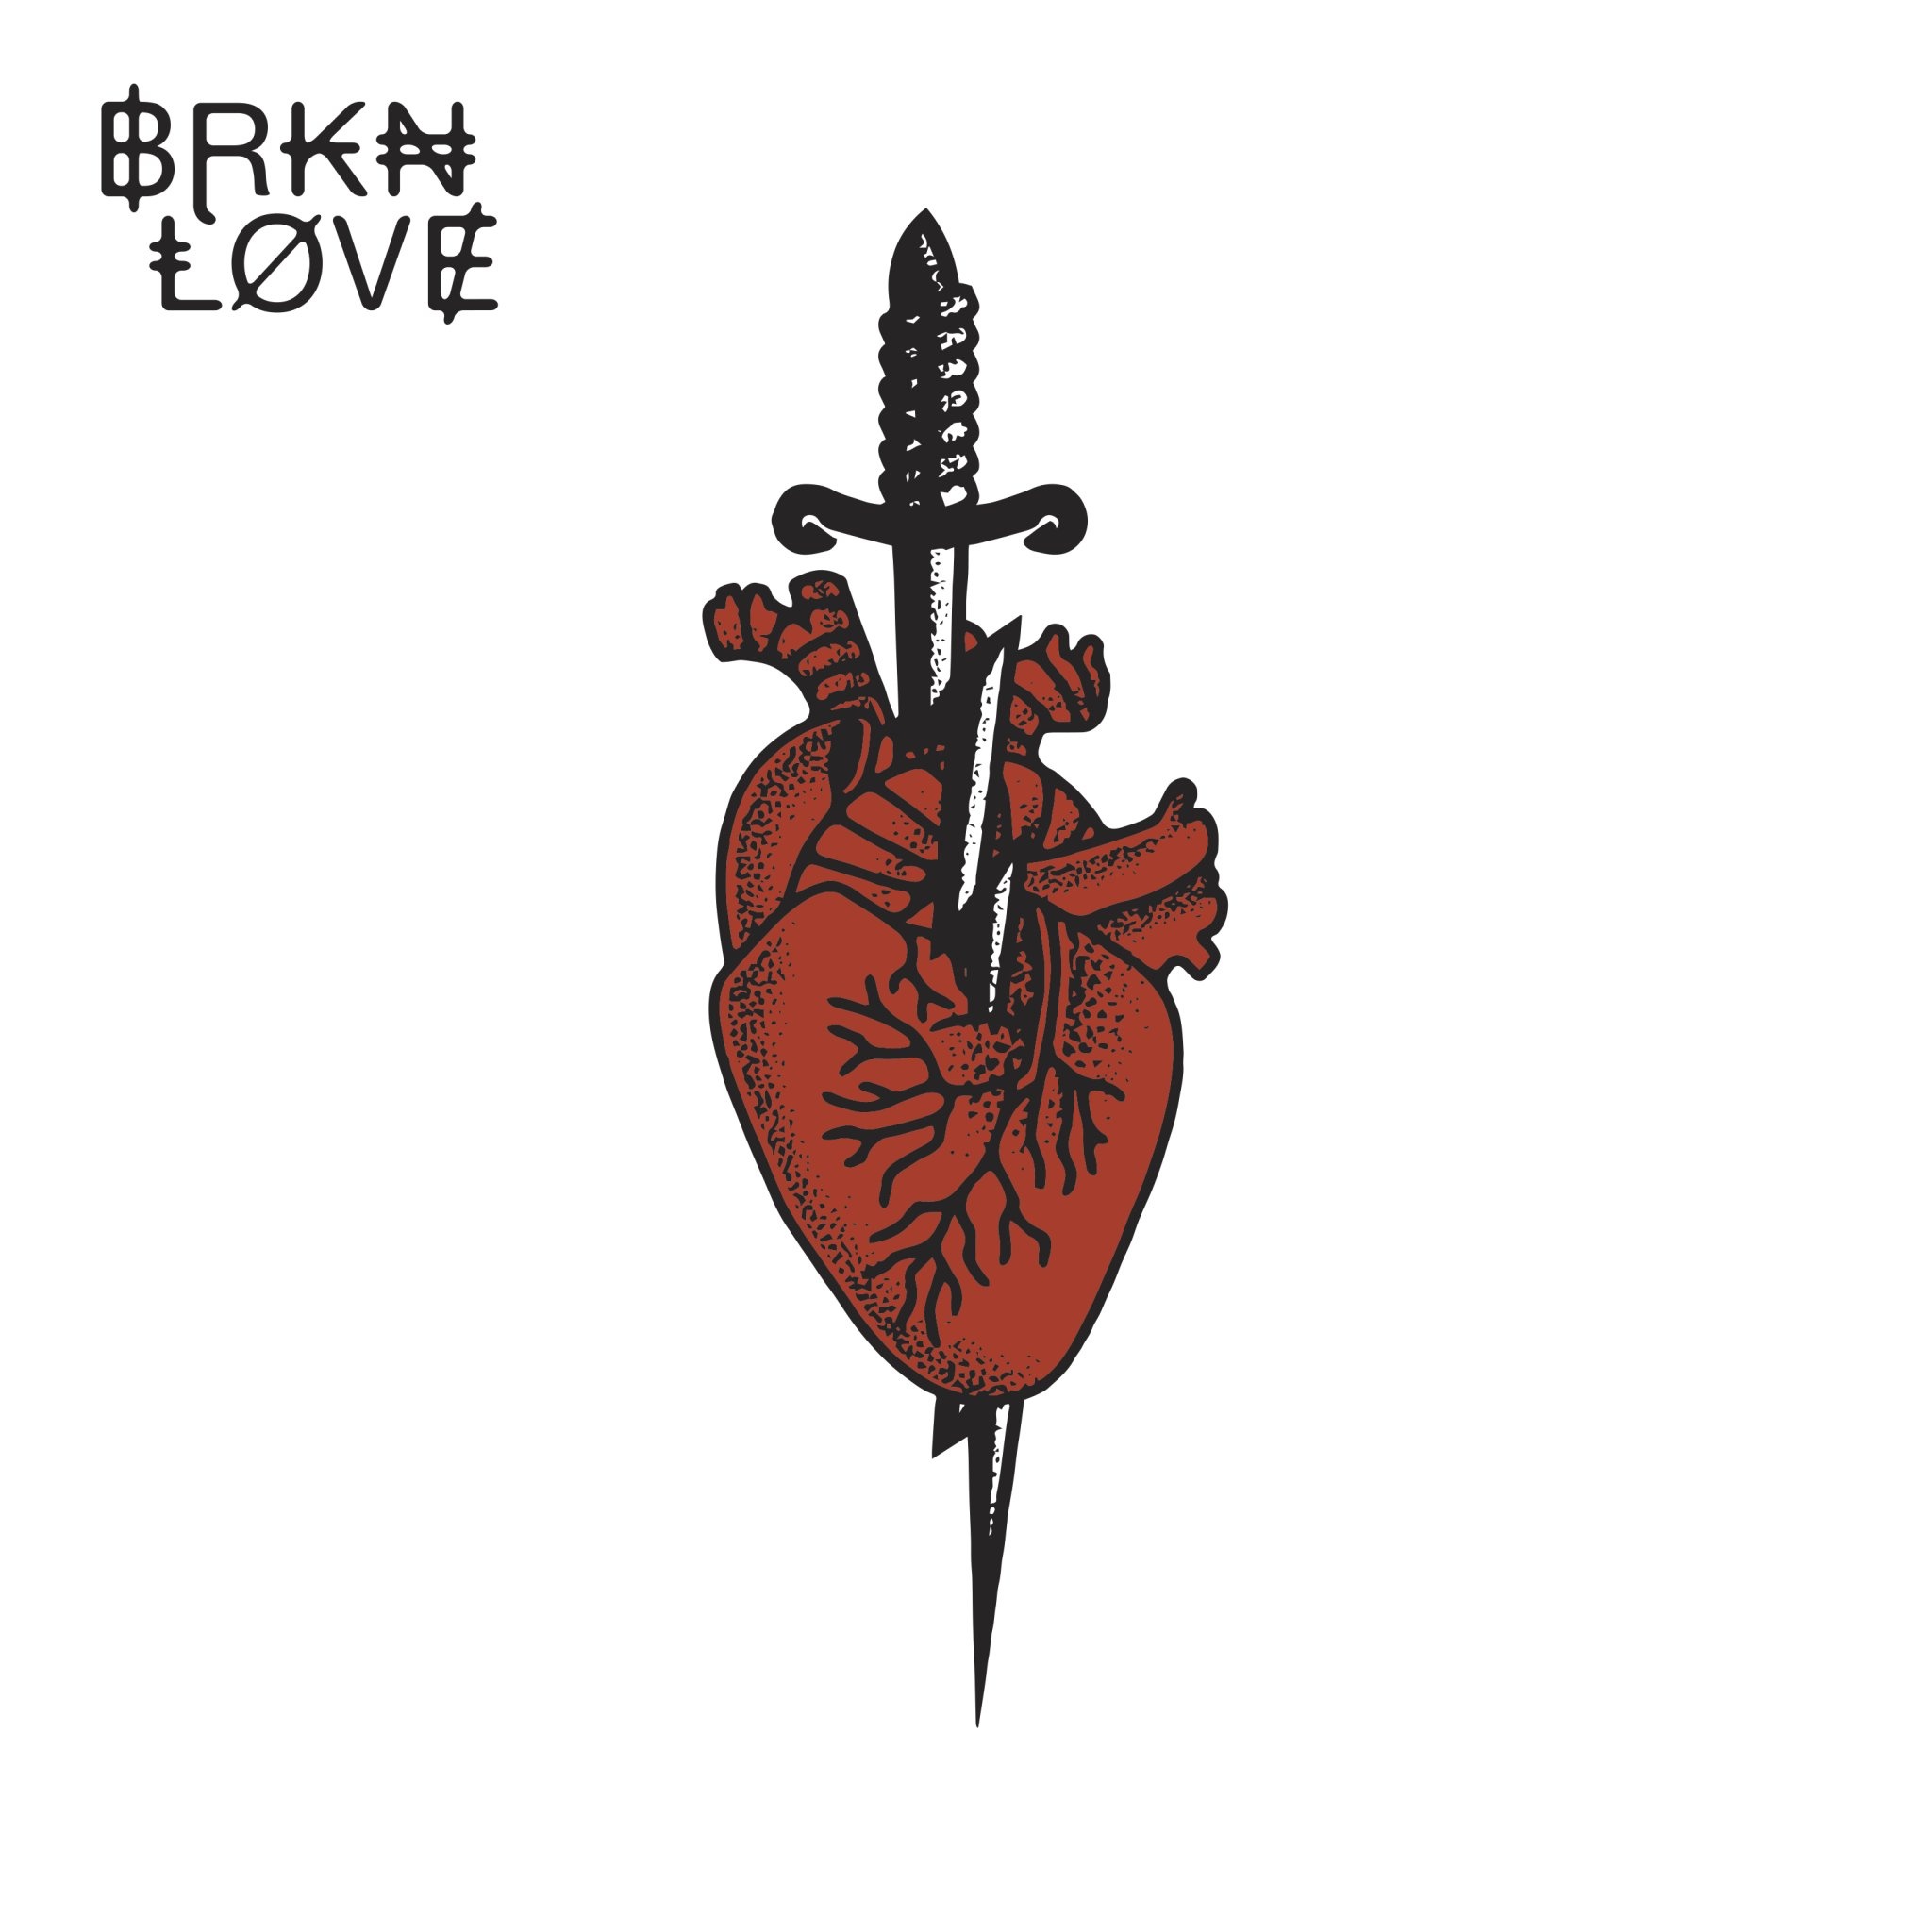 Brkn Love, Papercuts, Last. fm playlist, 2050x2050 HD Handy